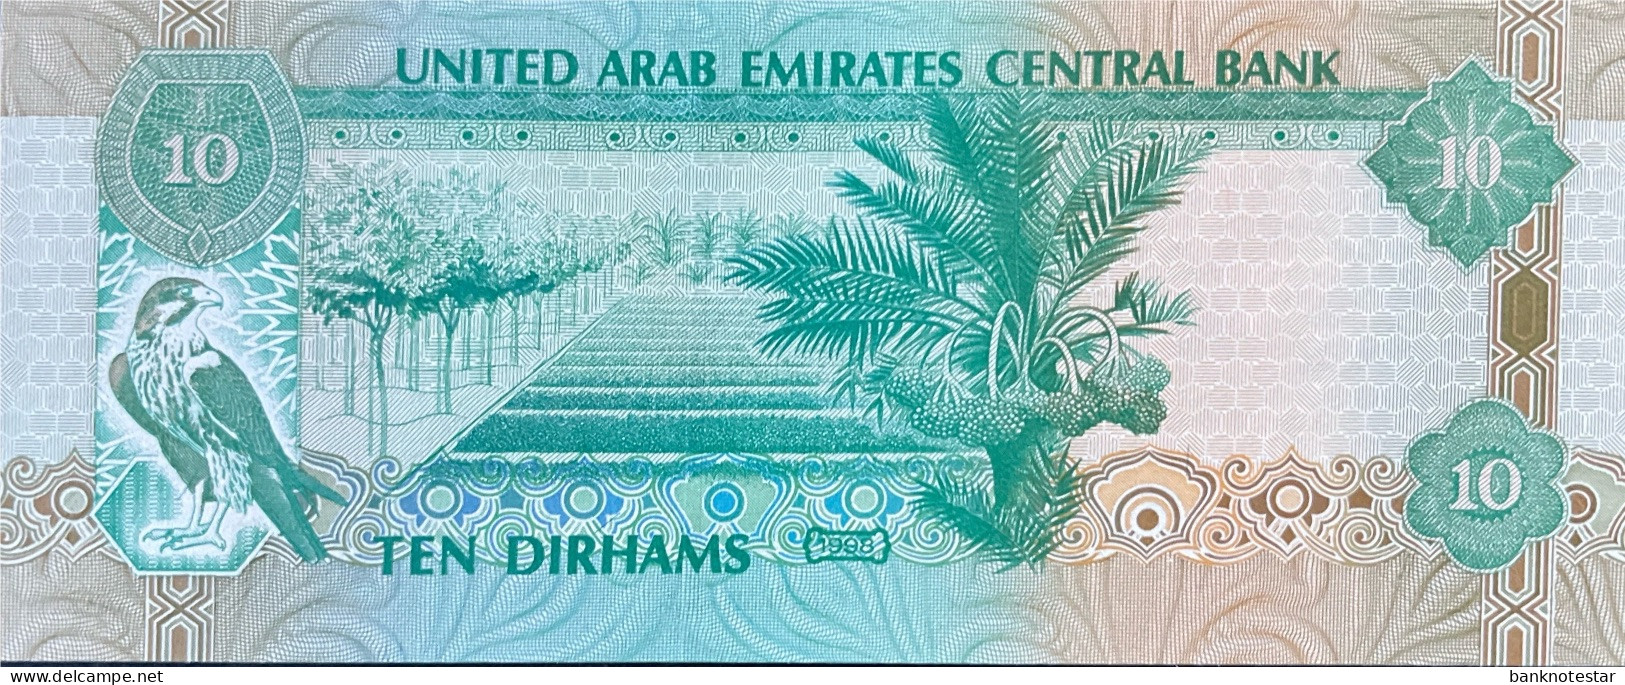 United Arab Emirates 10 Dirhams, P-20a (1998) - UNC - Prefix 01 - Emiratos Arabes Unidos